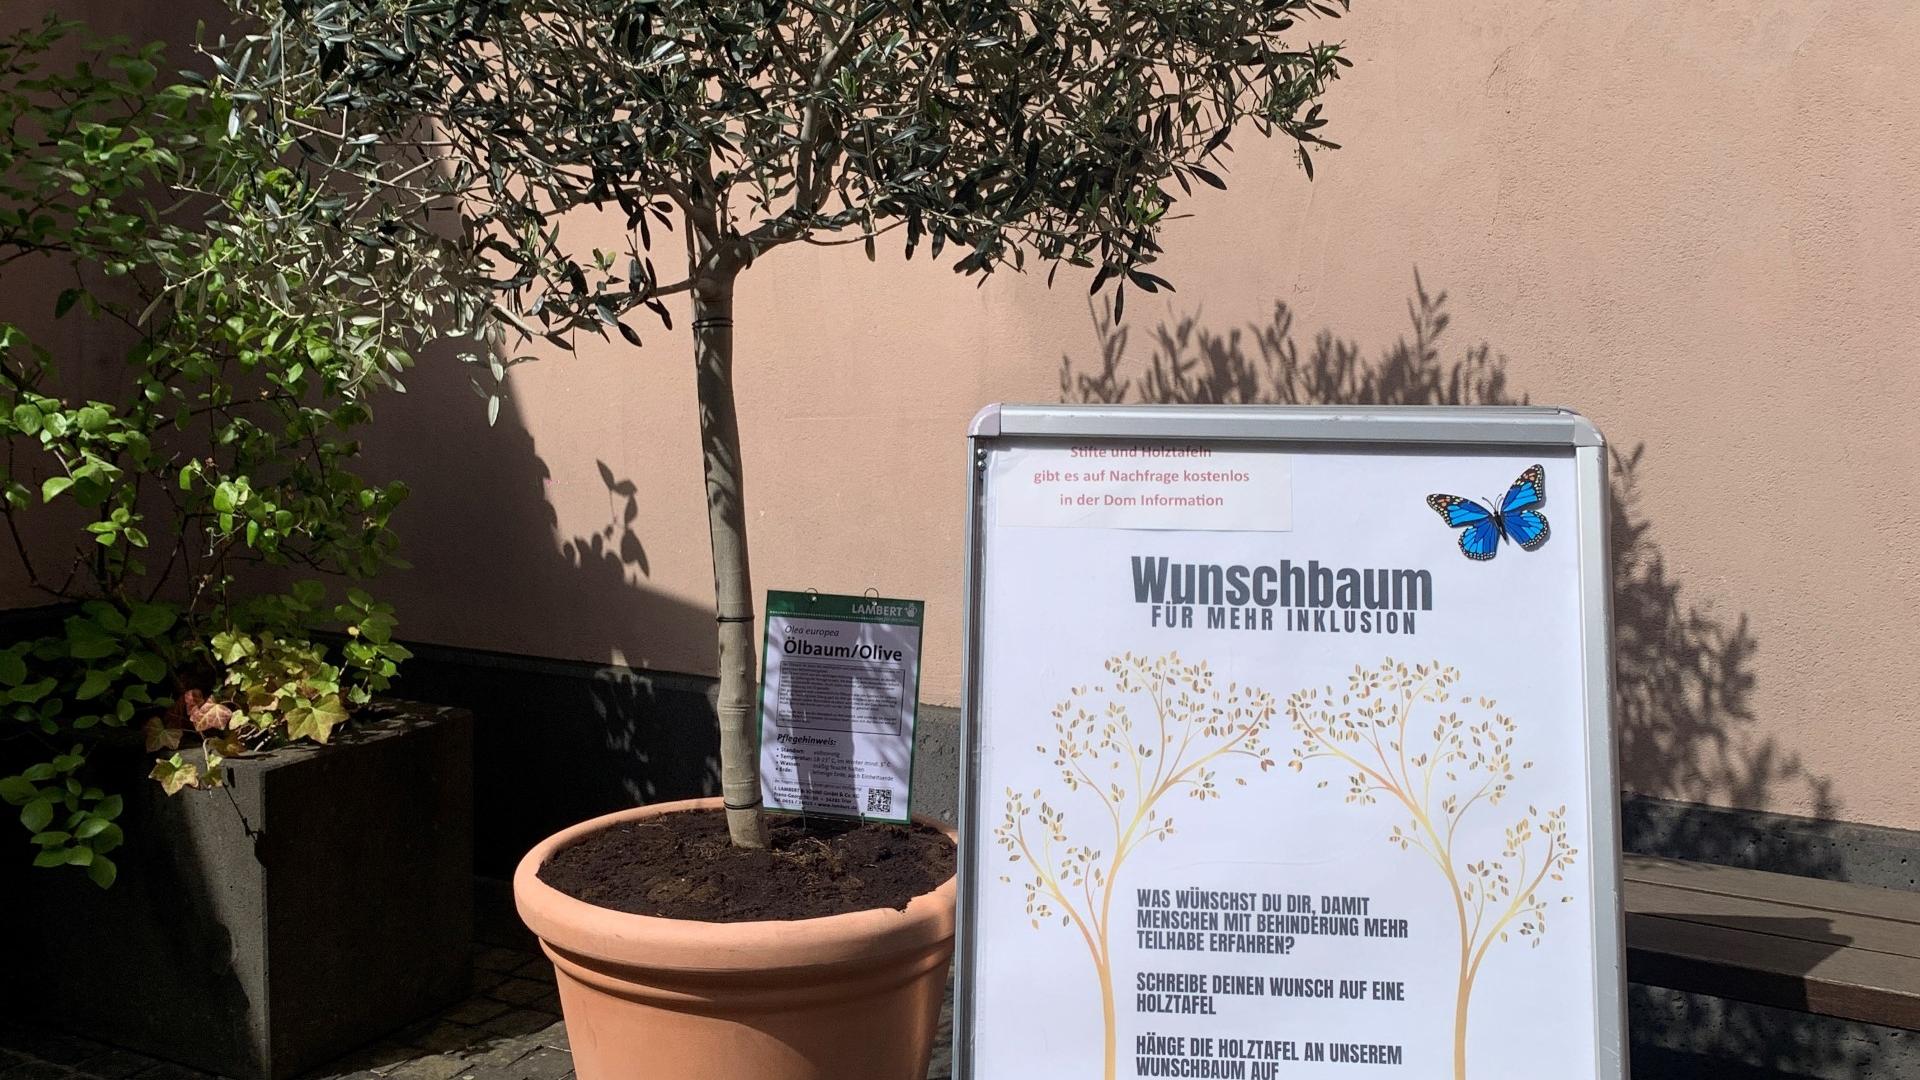 Der Wunschbaum wird im Innenhof der Dominformation und im Gartenzentrum LAMBERT zu finden sein.